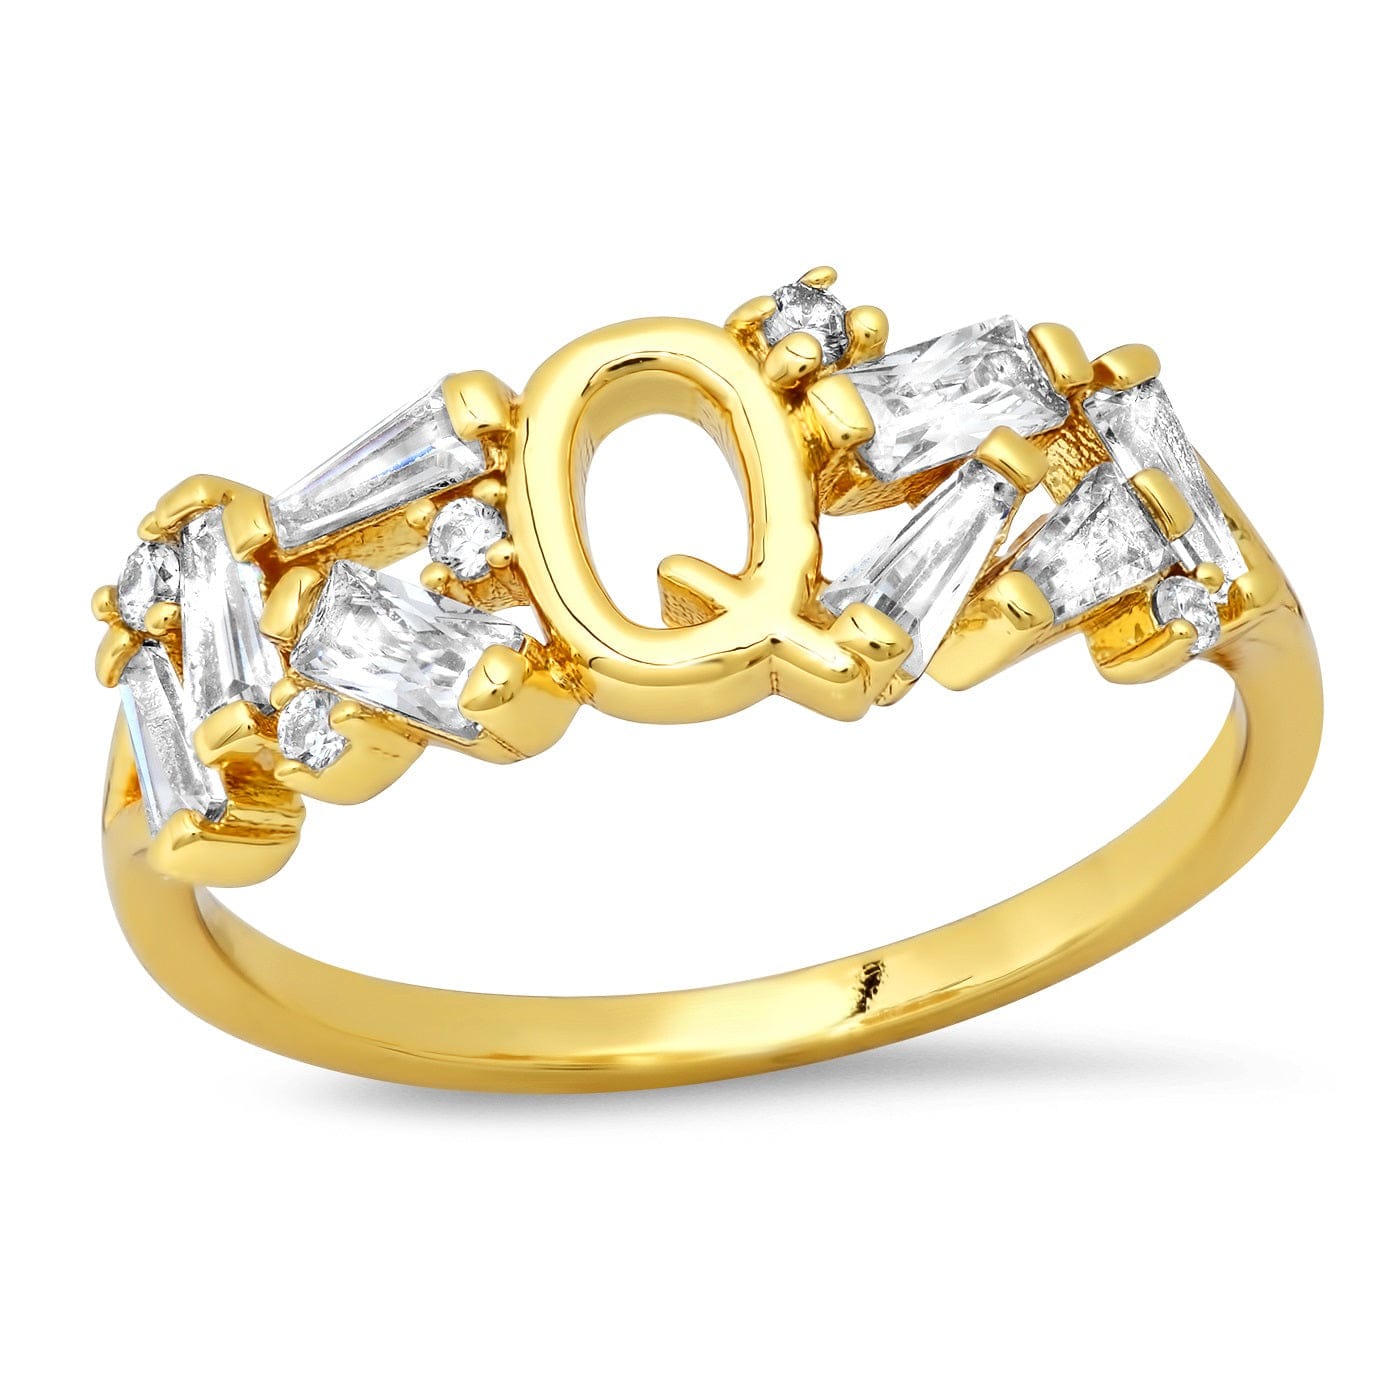 TAI JEWELRY Rings 6 / Q Baguette Initial Ring